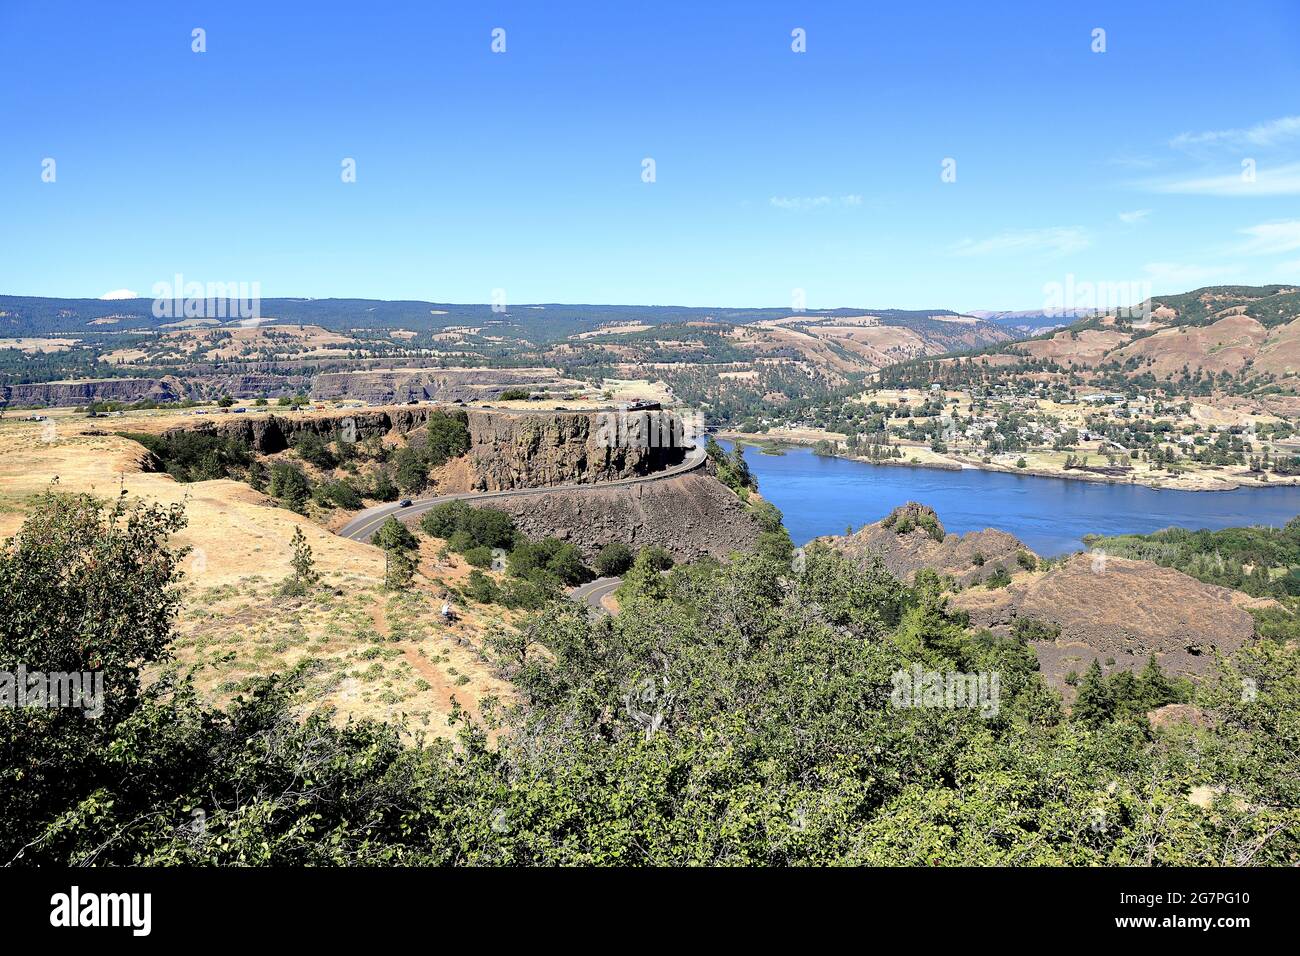 Point de vue de Rowen Crest : le magnifique monument naturel et l'attraction touristique surplombant la gorge du fleuve Columbia dans l'Oregon. Banque D'Images